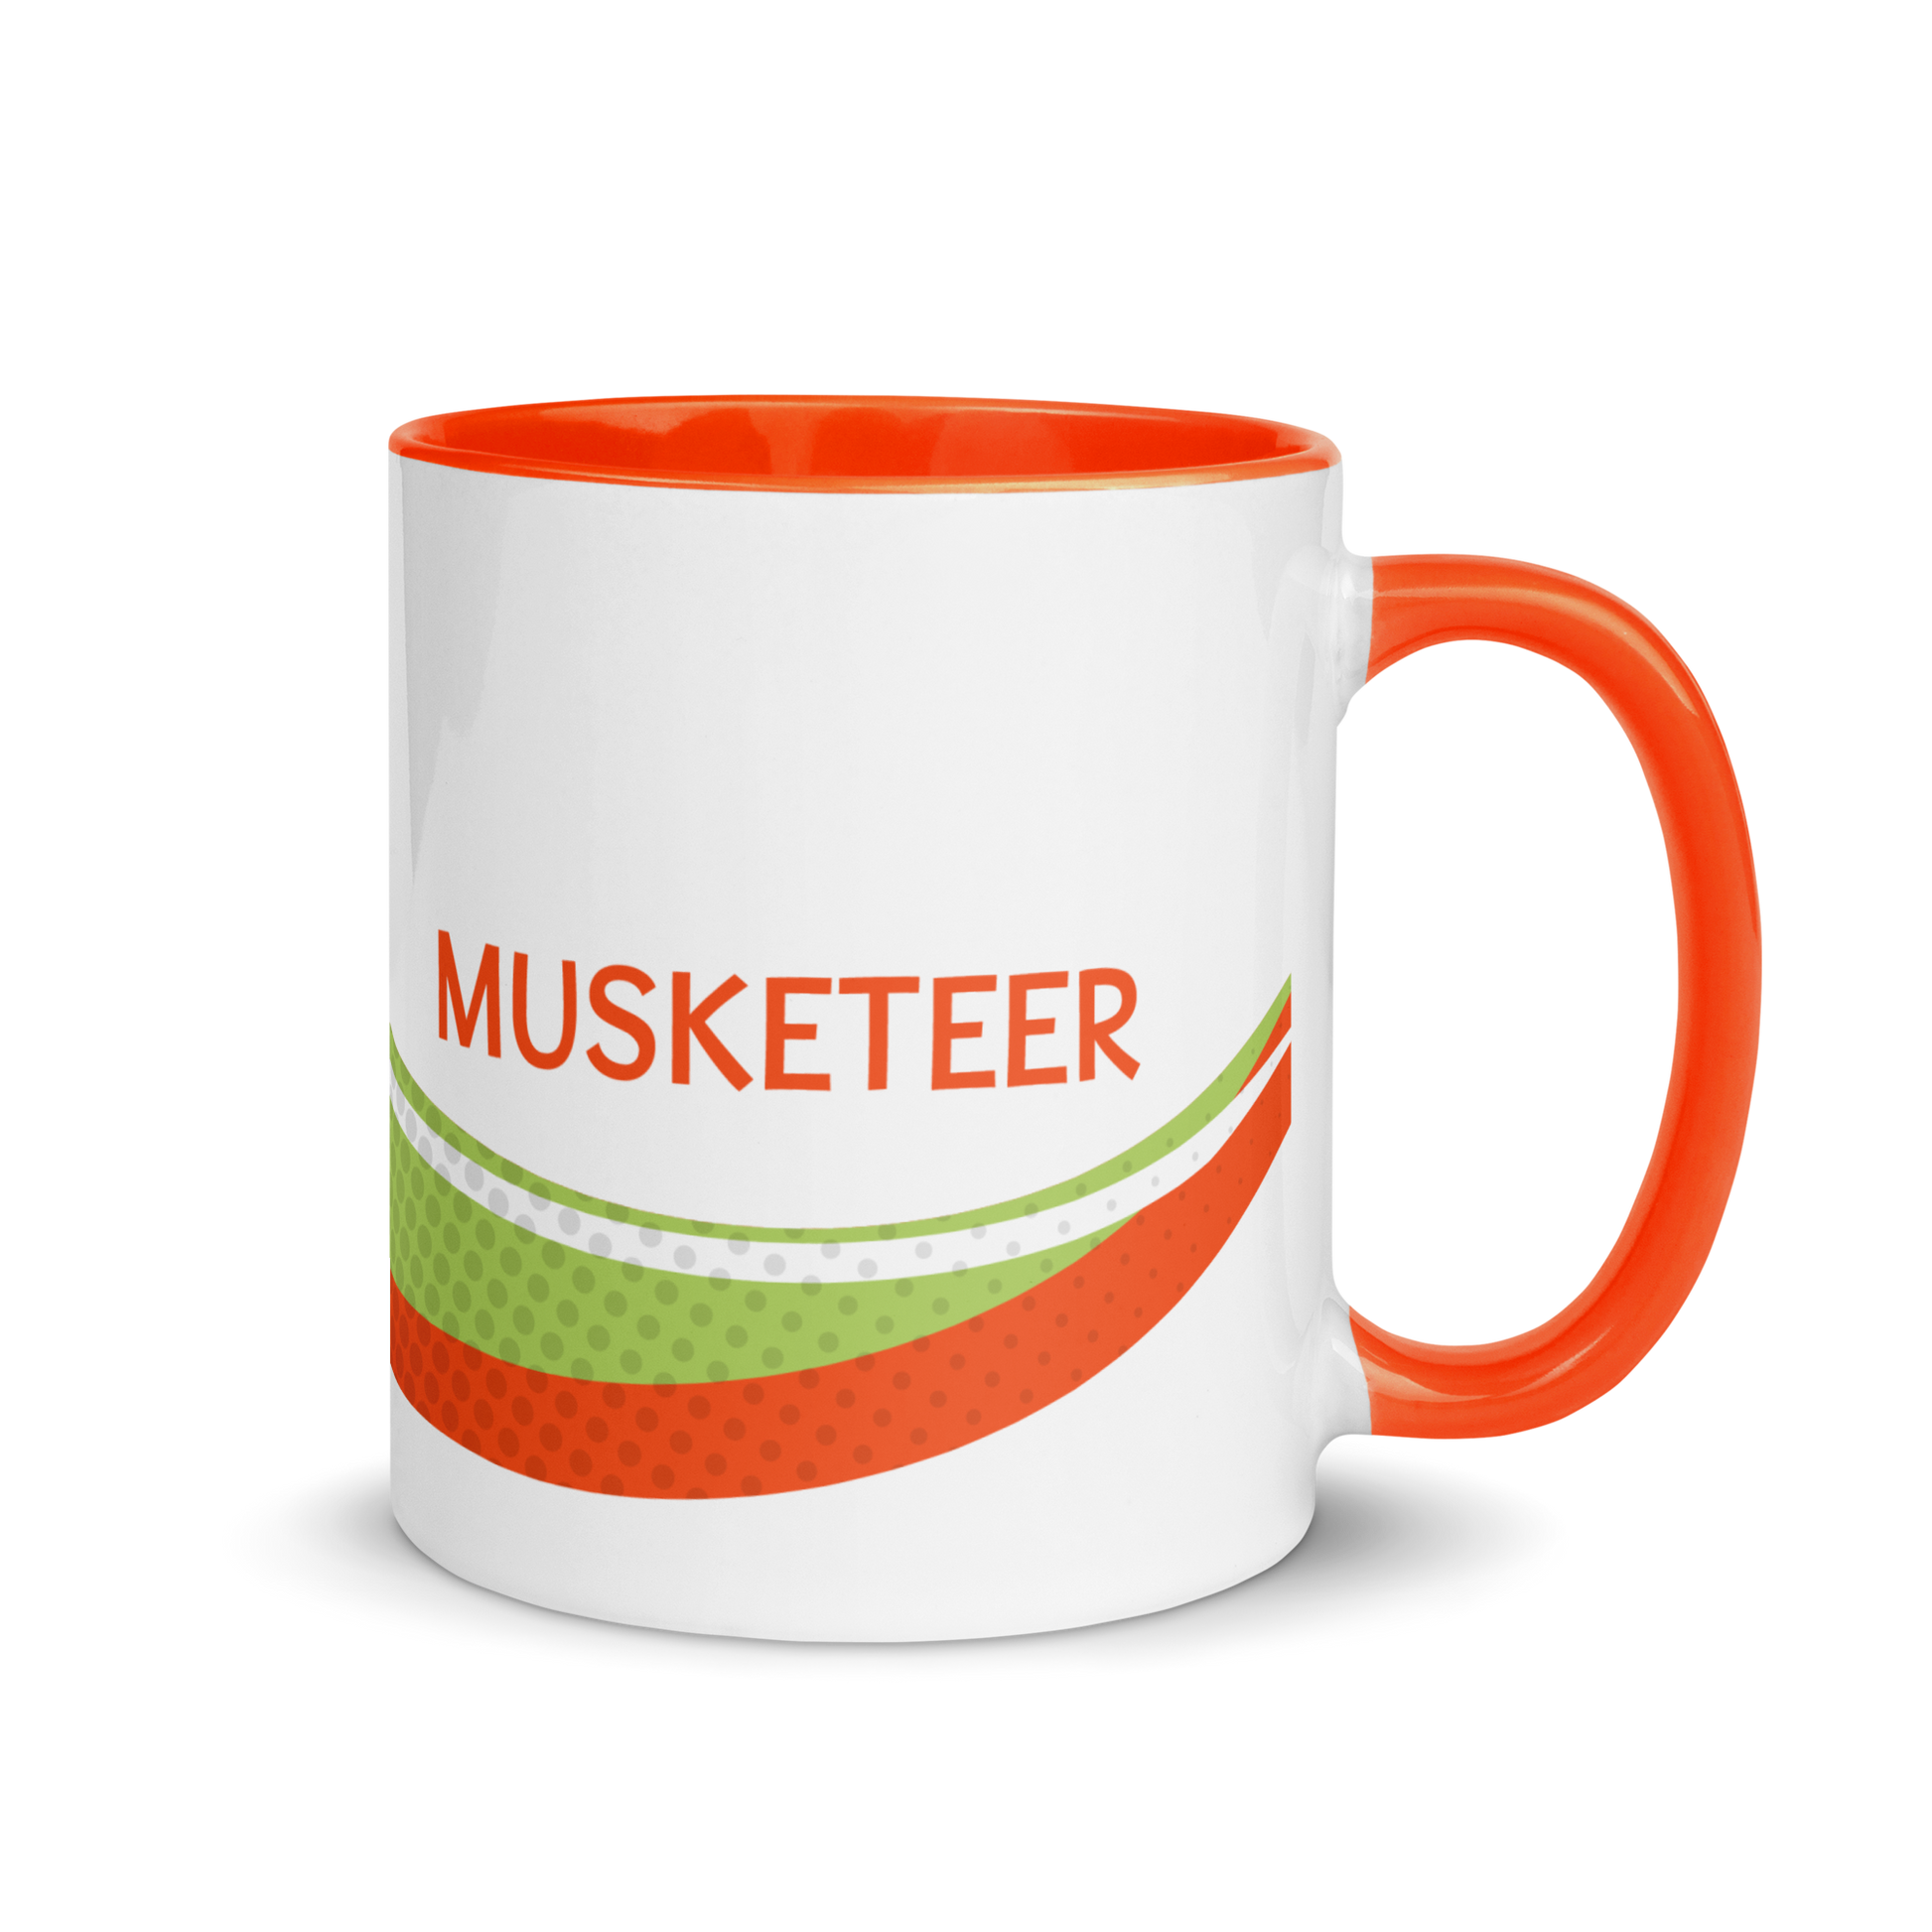 Pirate101-Musketeer-Mug2-ceramic-coffee